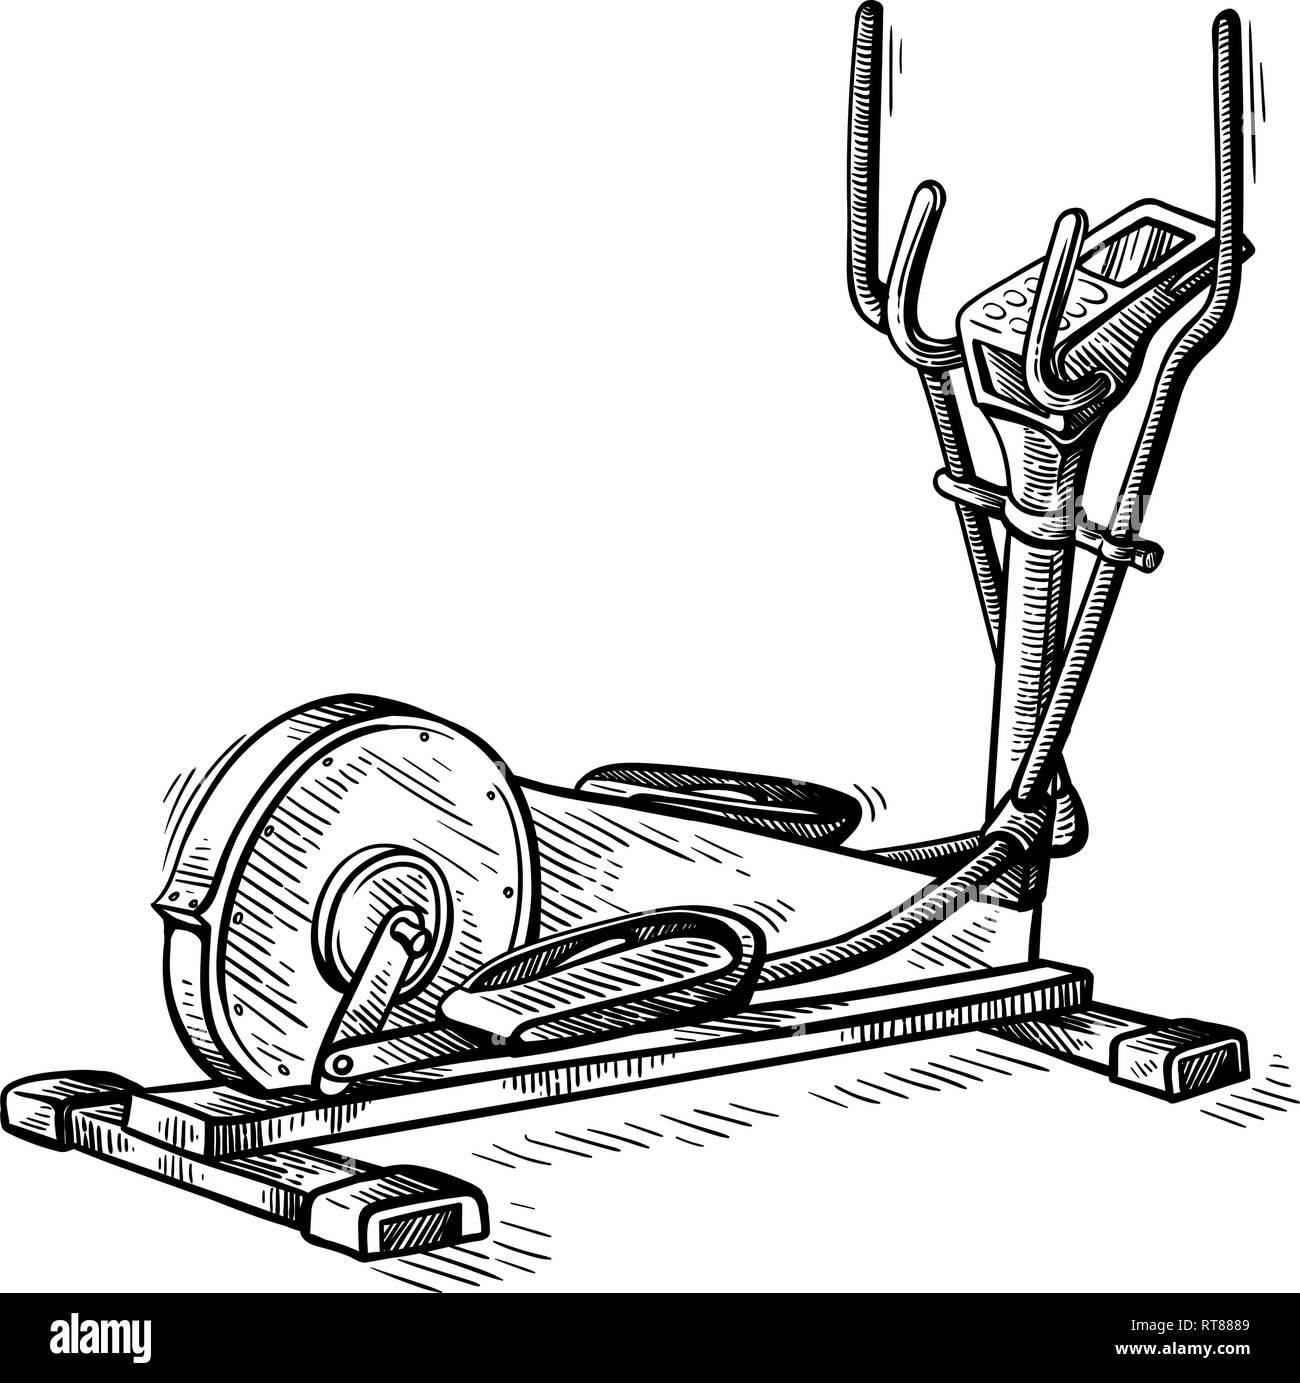 Croquis dessinés à la main de l'équipement de sport elliptique machine vector illustration Illustration de Vecteur